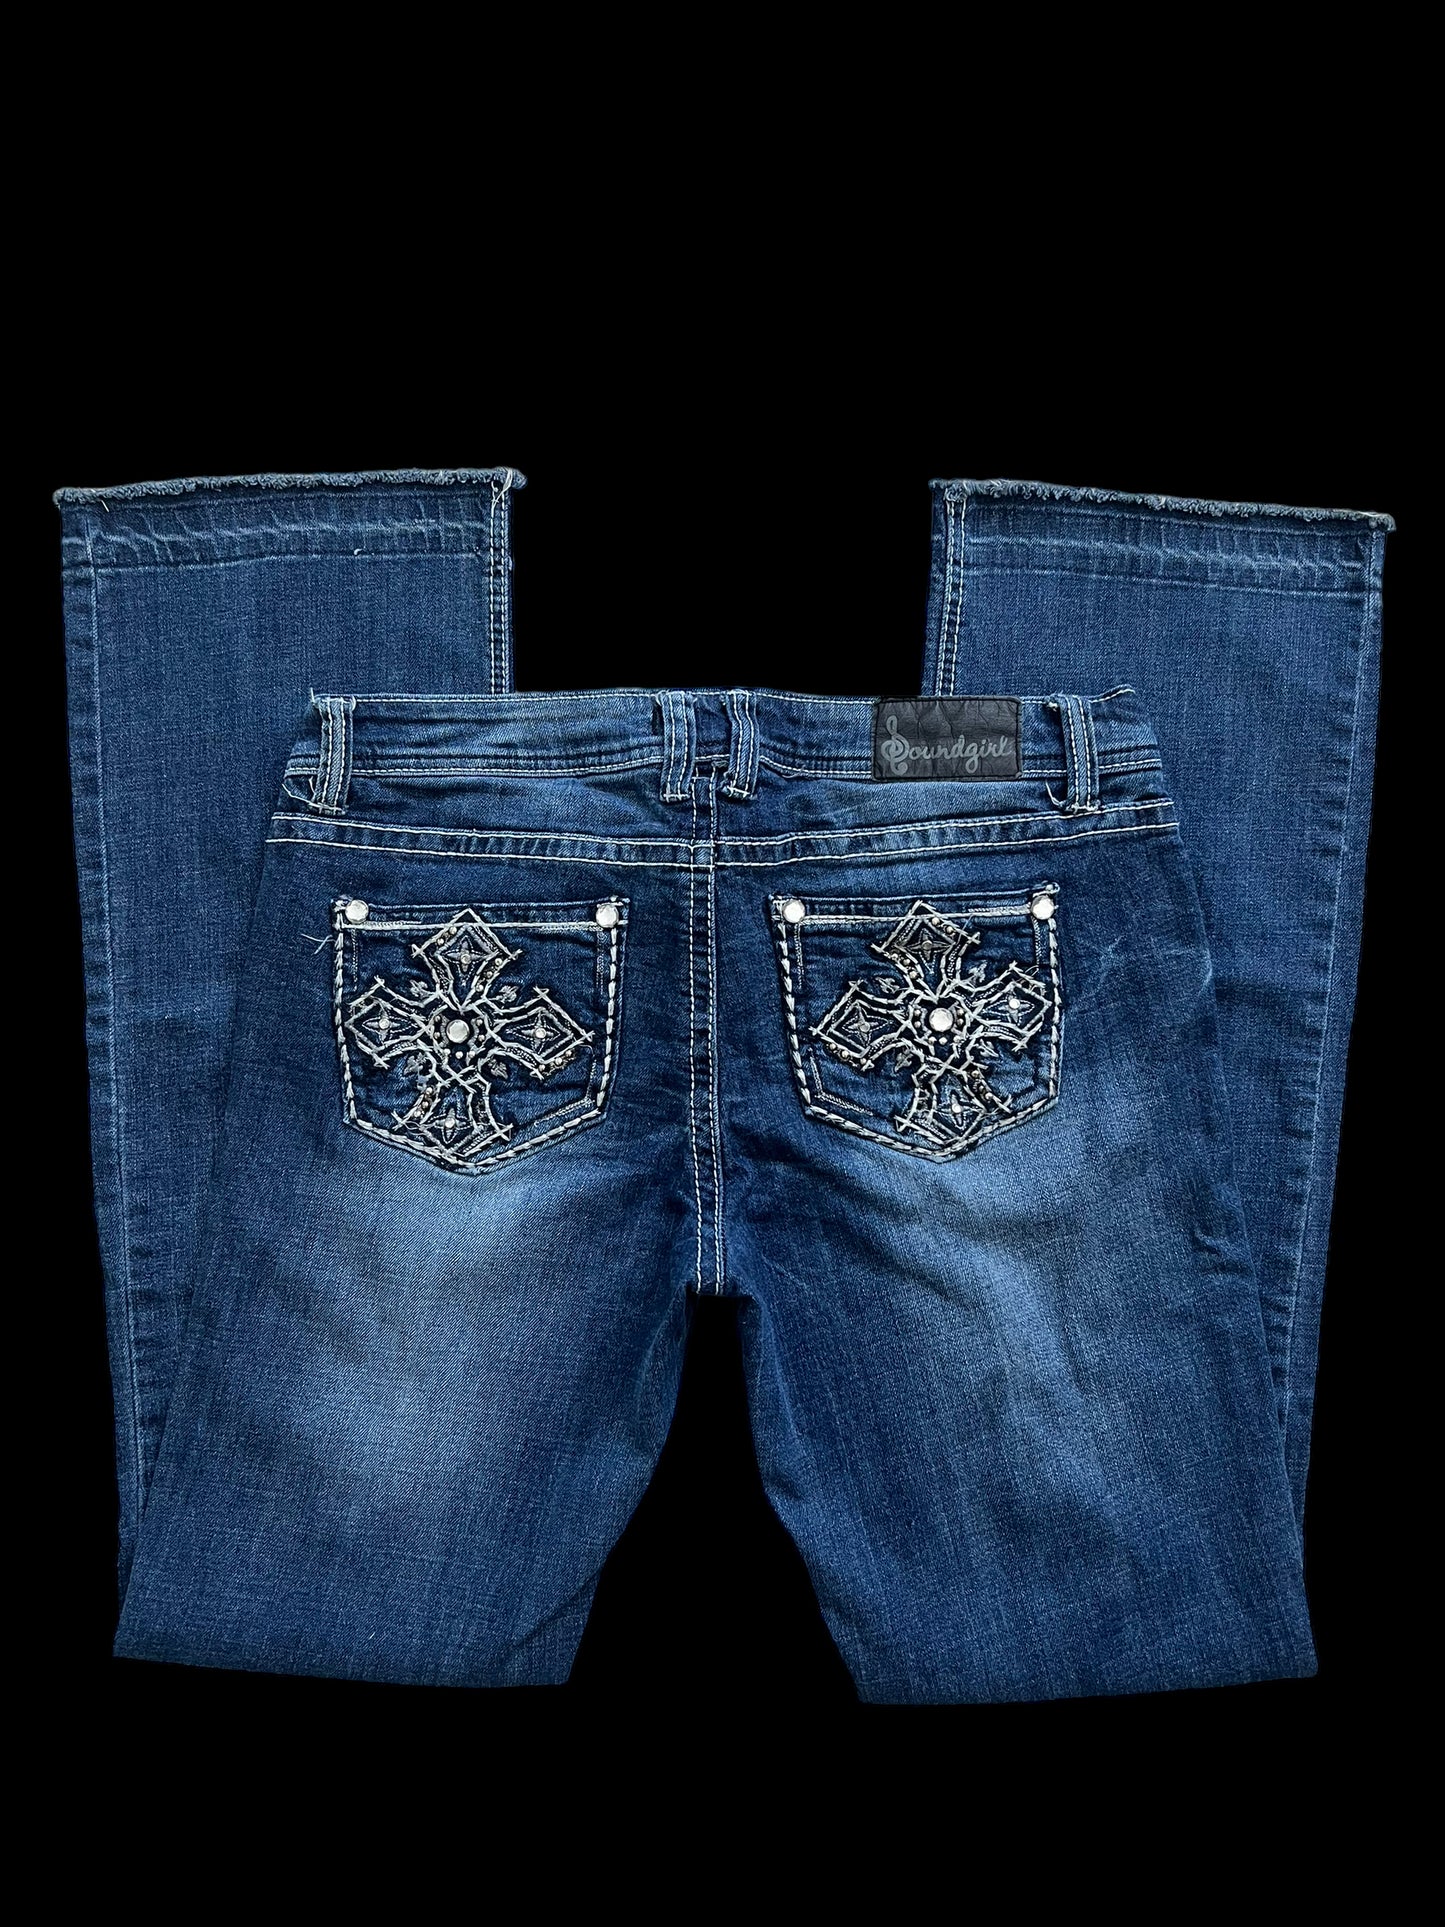 Embellished cross jeans